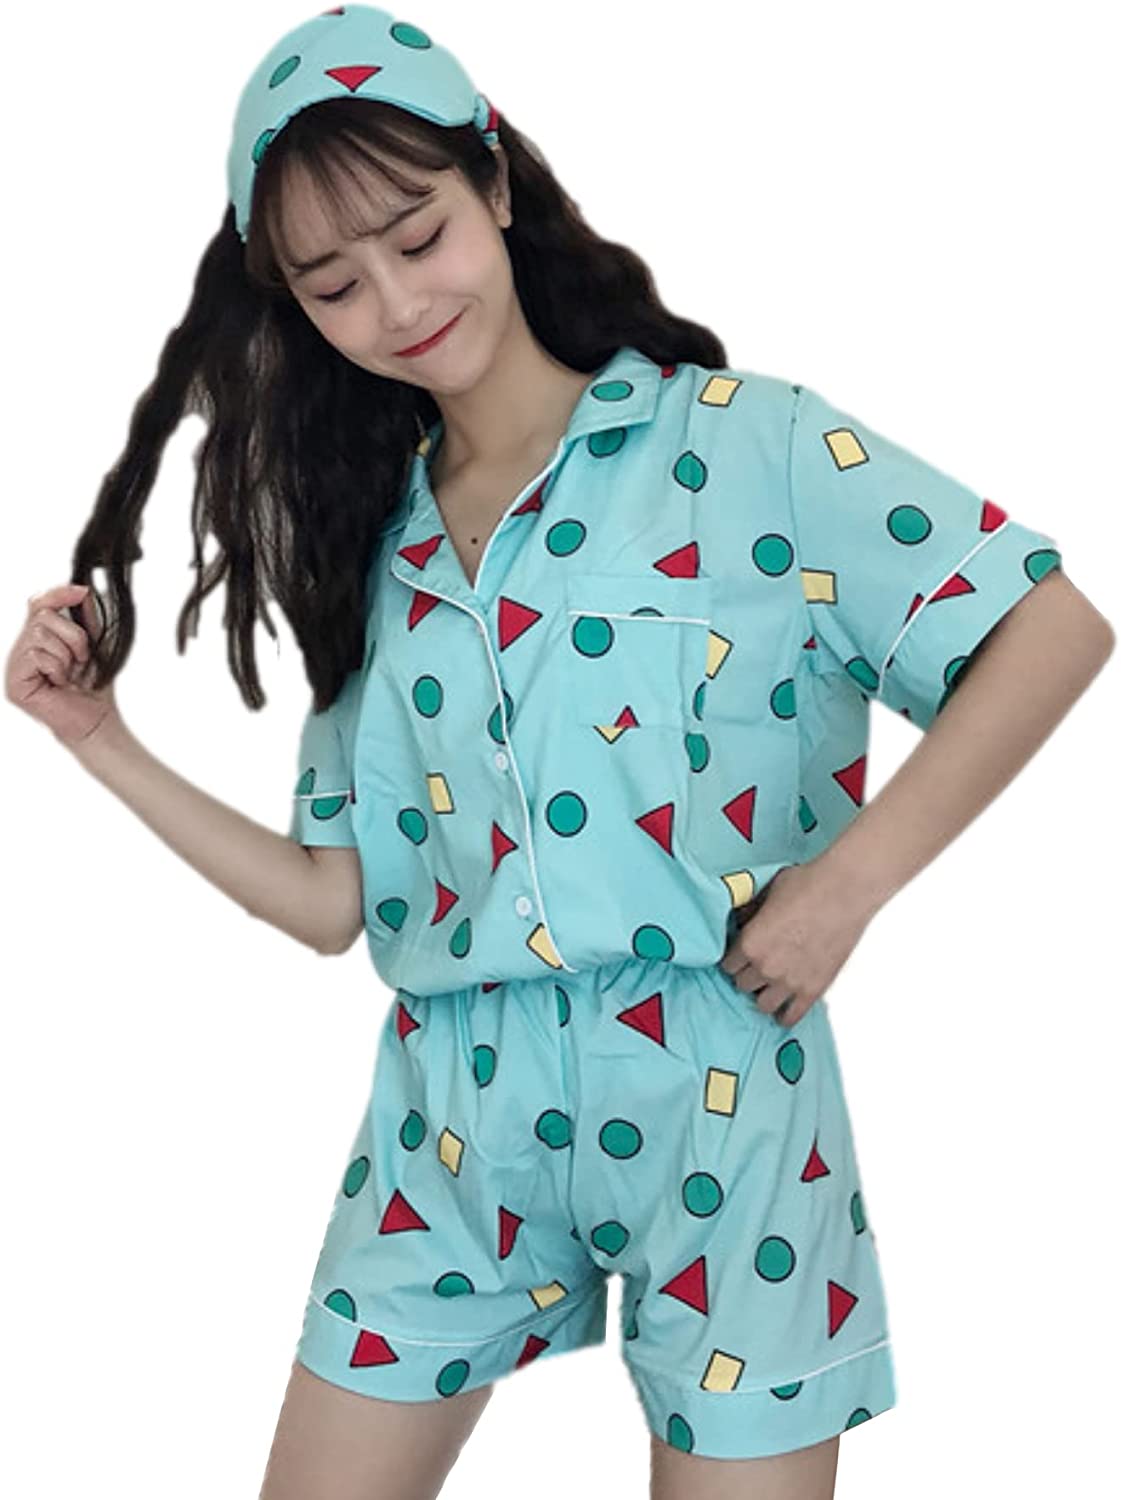 クレヨンしんちゃん パジャマ短袖 部屋着 上下セットルームウェア